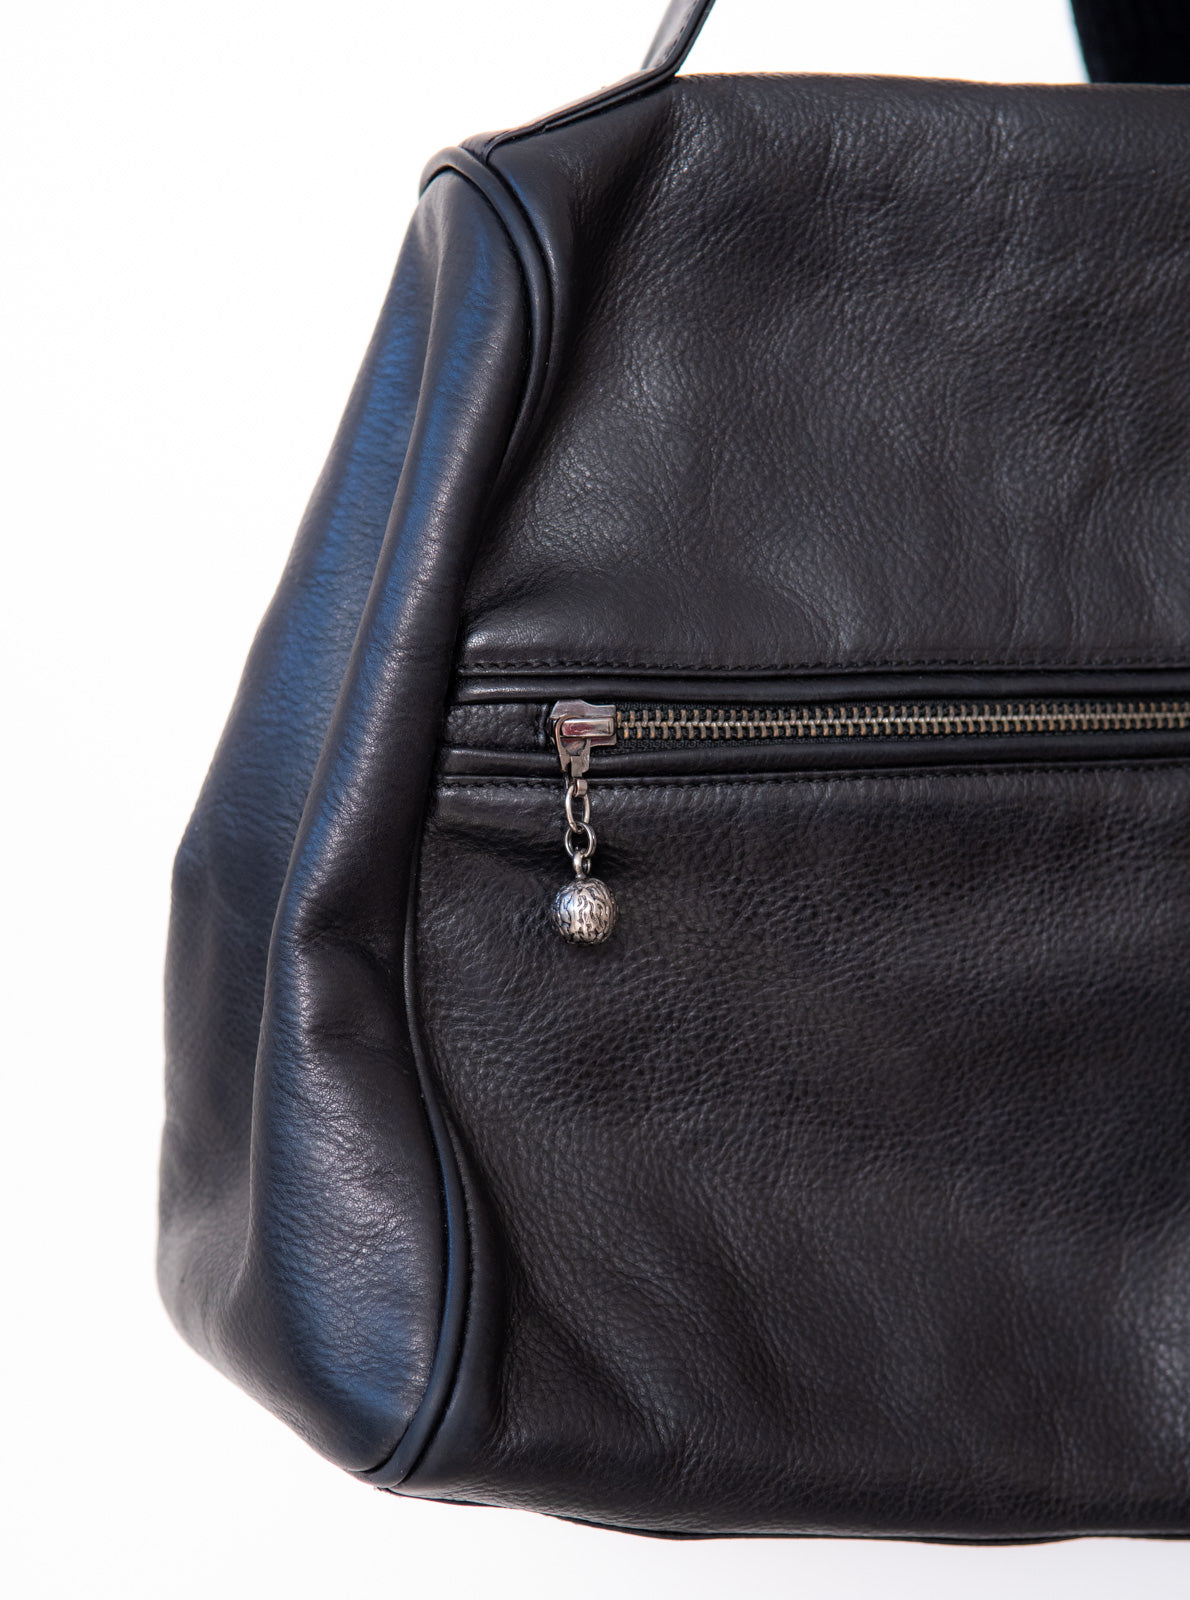 Erva Black Leather Bag - EVEYSPRELOVED